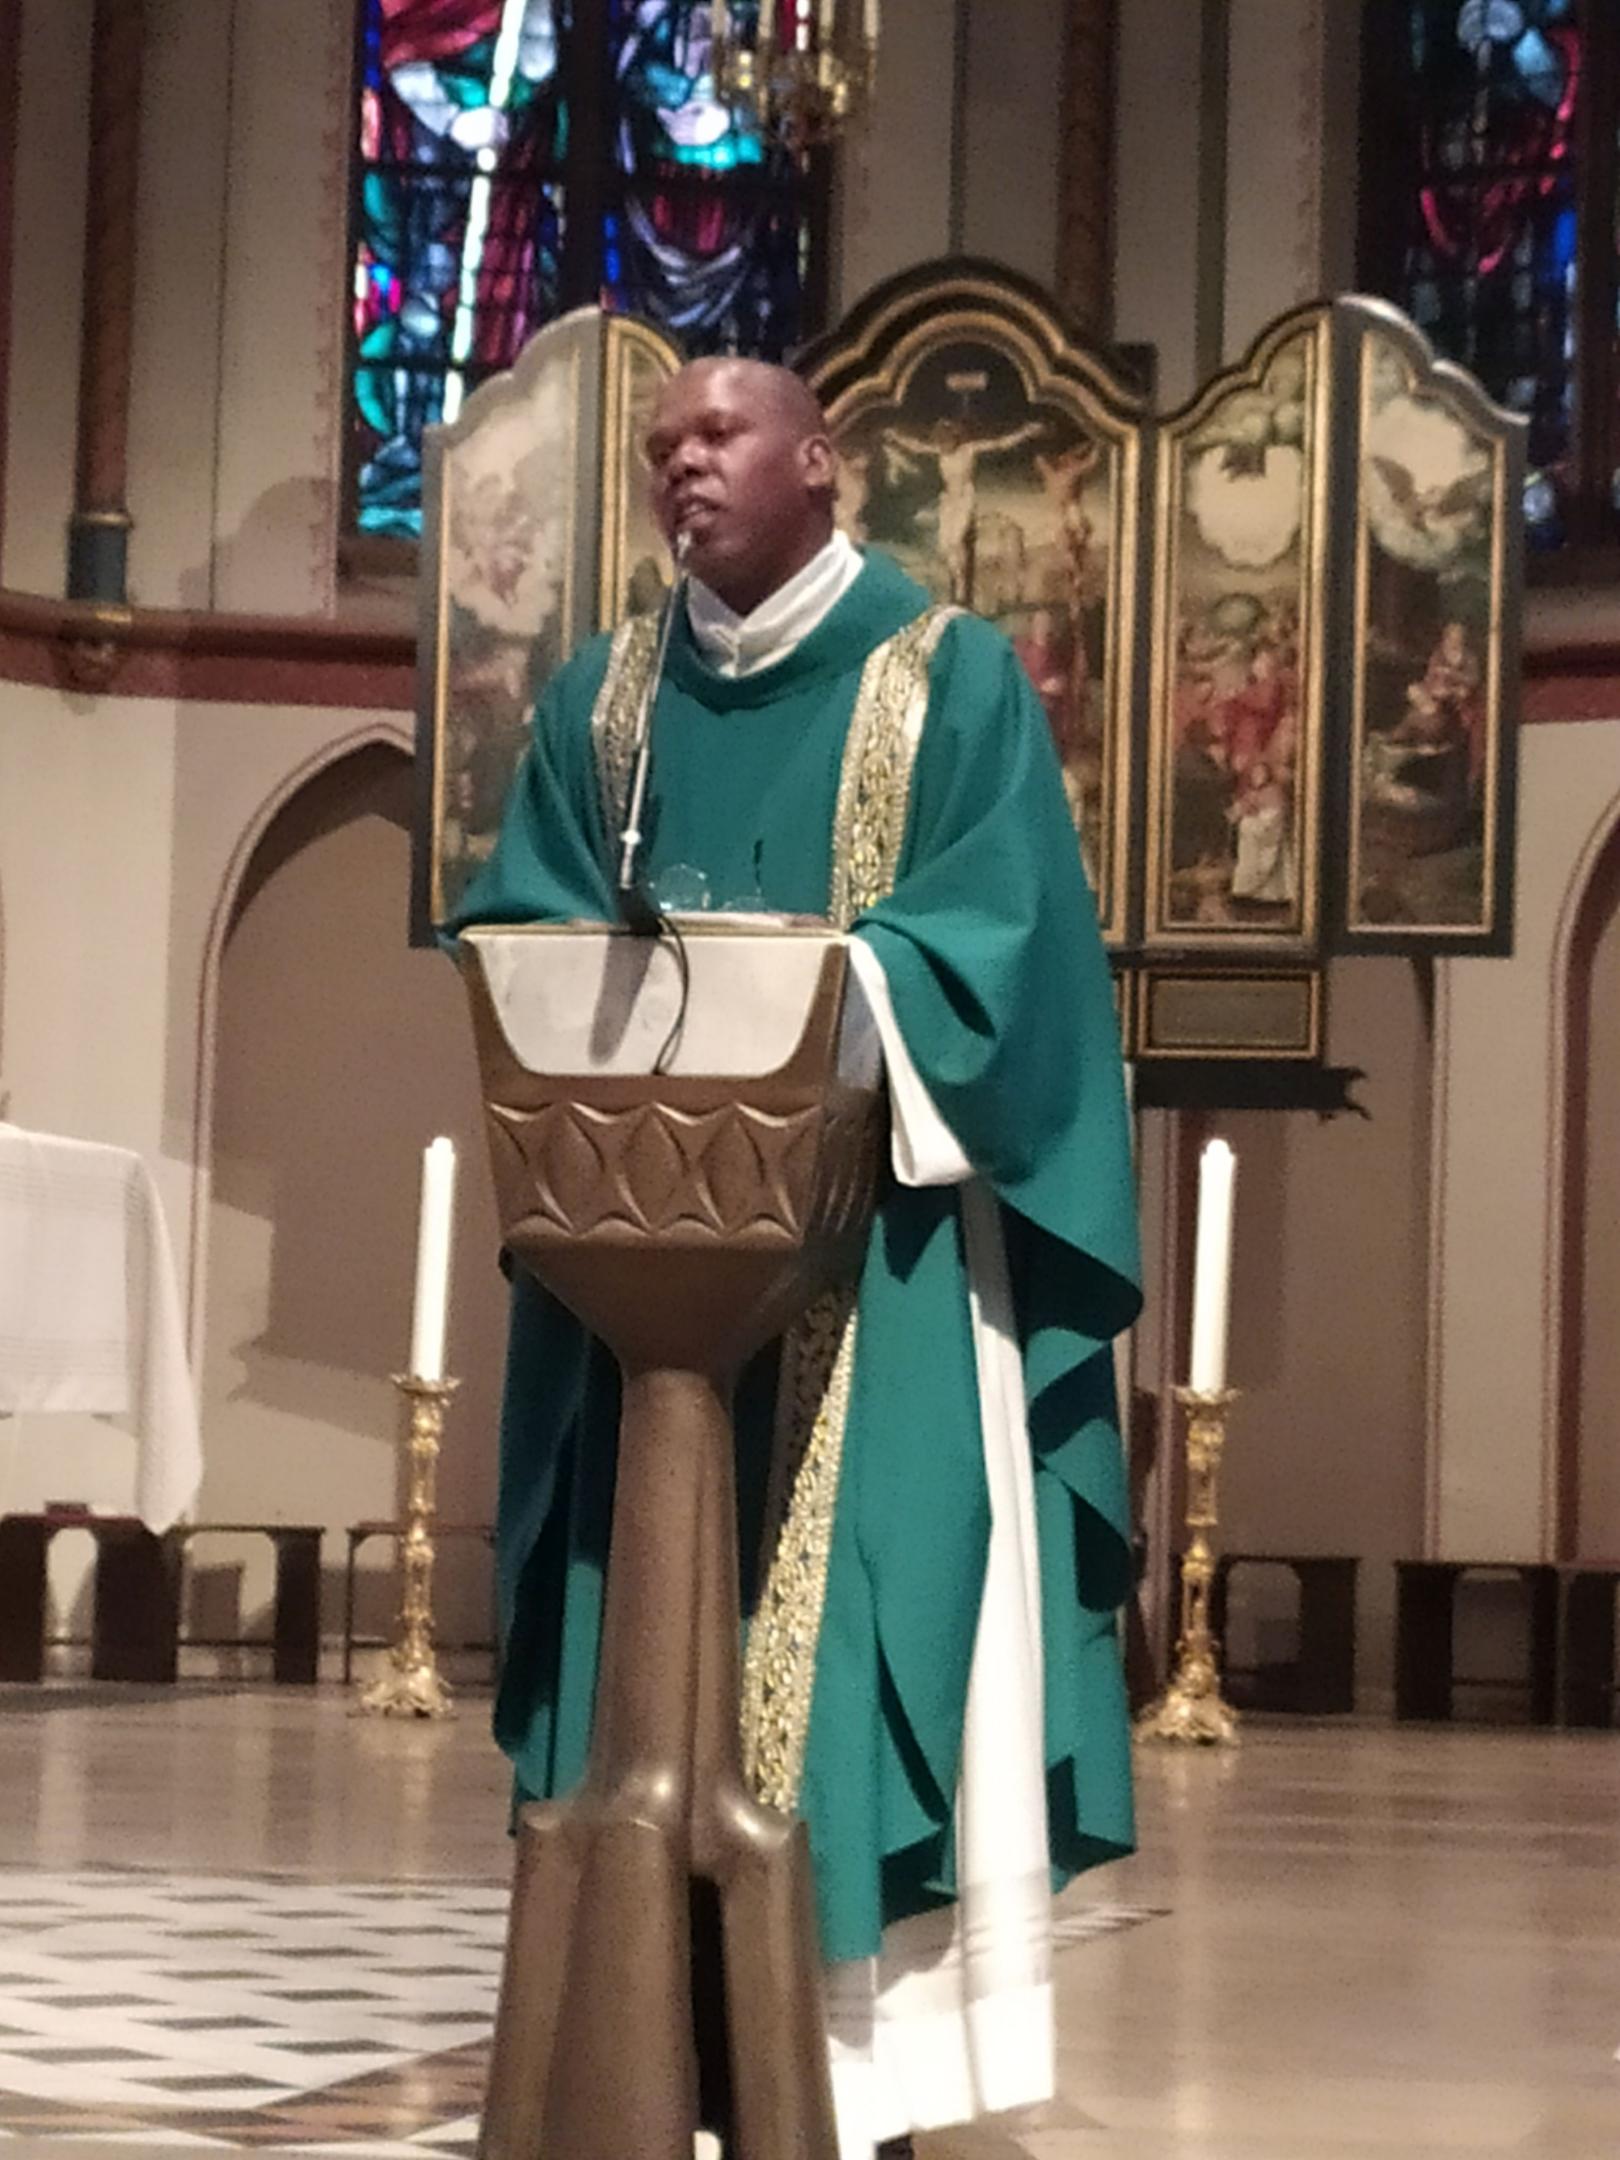 Padre Luis Carlos bei der Sonntagsmesse in St. Donatus, Aachen am 12.9.21 (c) Michael Schürmann